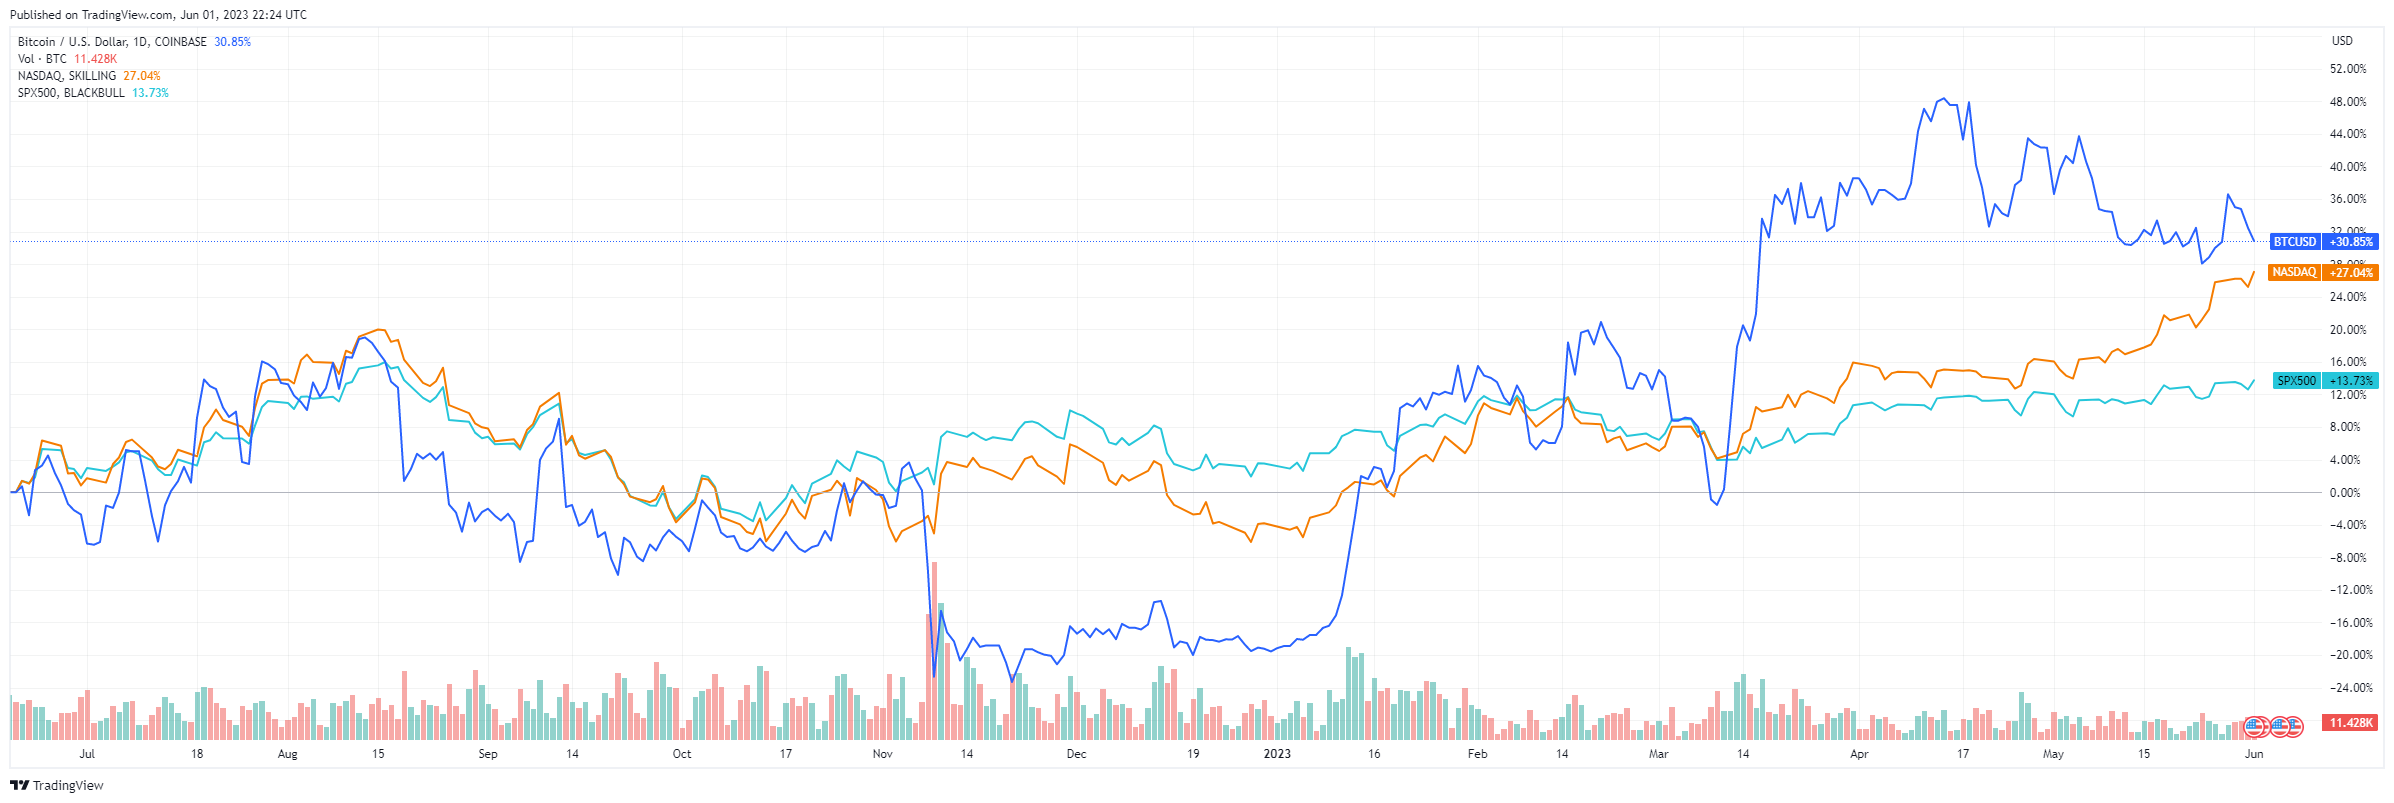 Gráfico de líneas que muestra el movimiento de precios de Bitcoin, el Nasdaq y el S&P 500